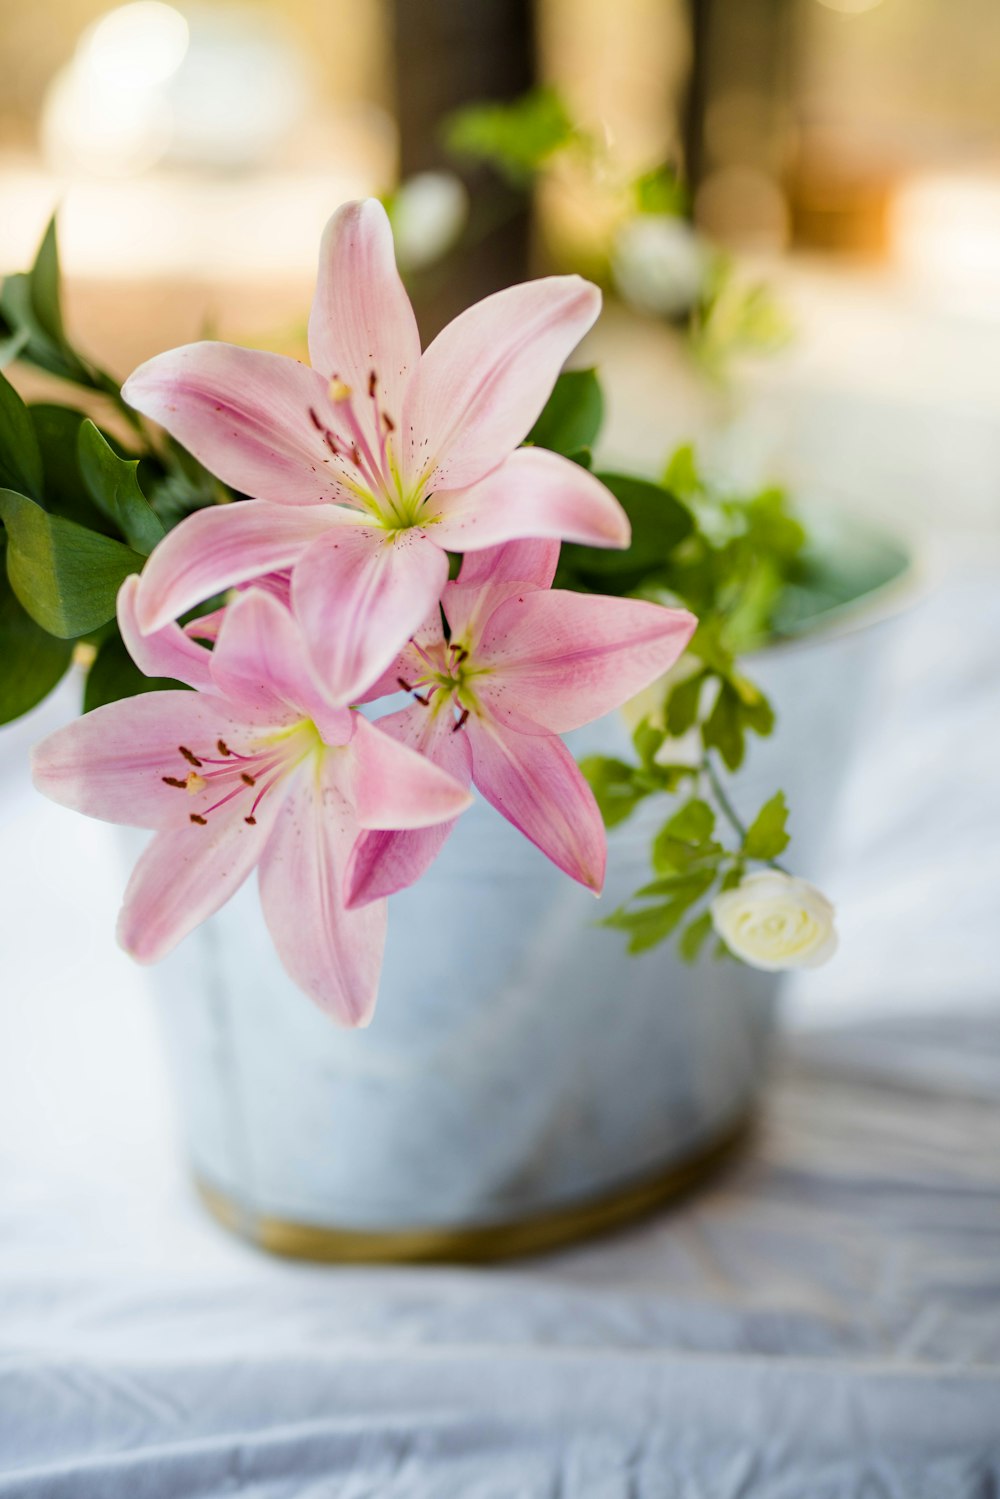 흰 냄비에 분홍색 꽃 식물